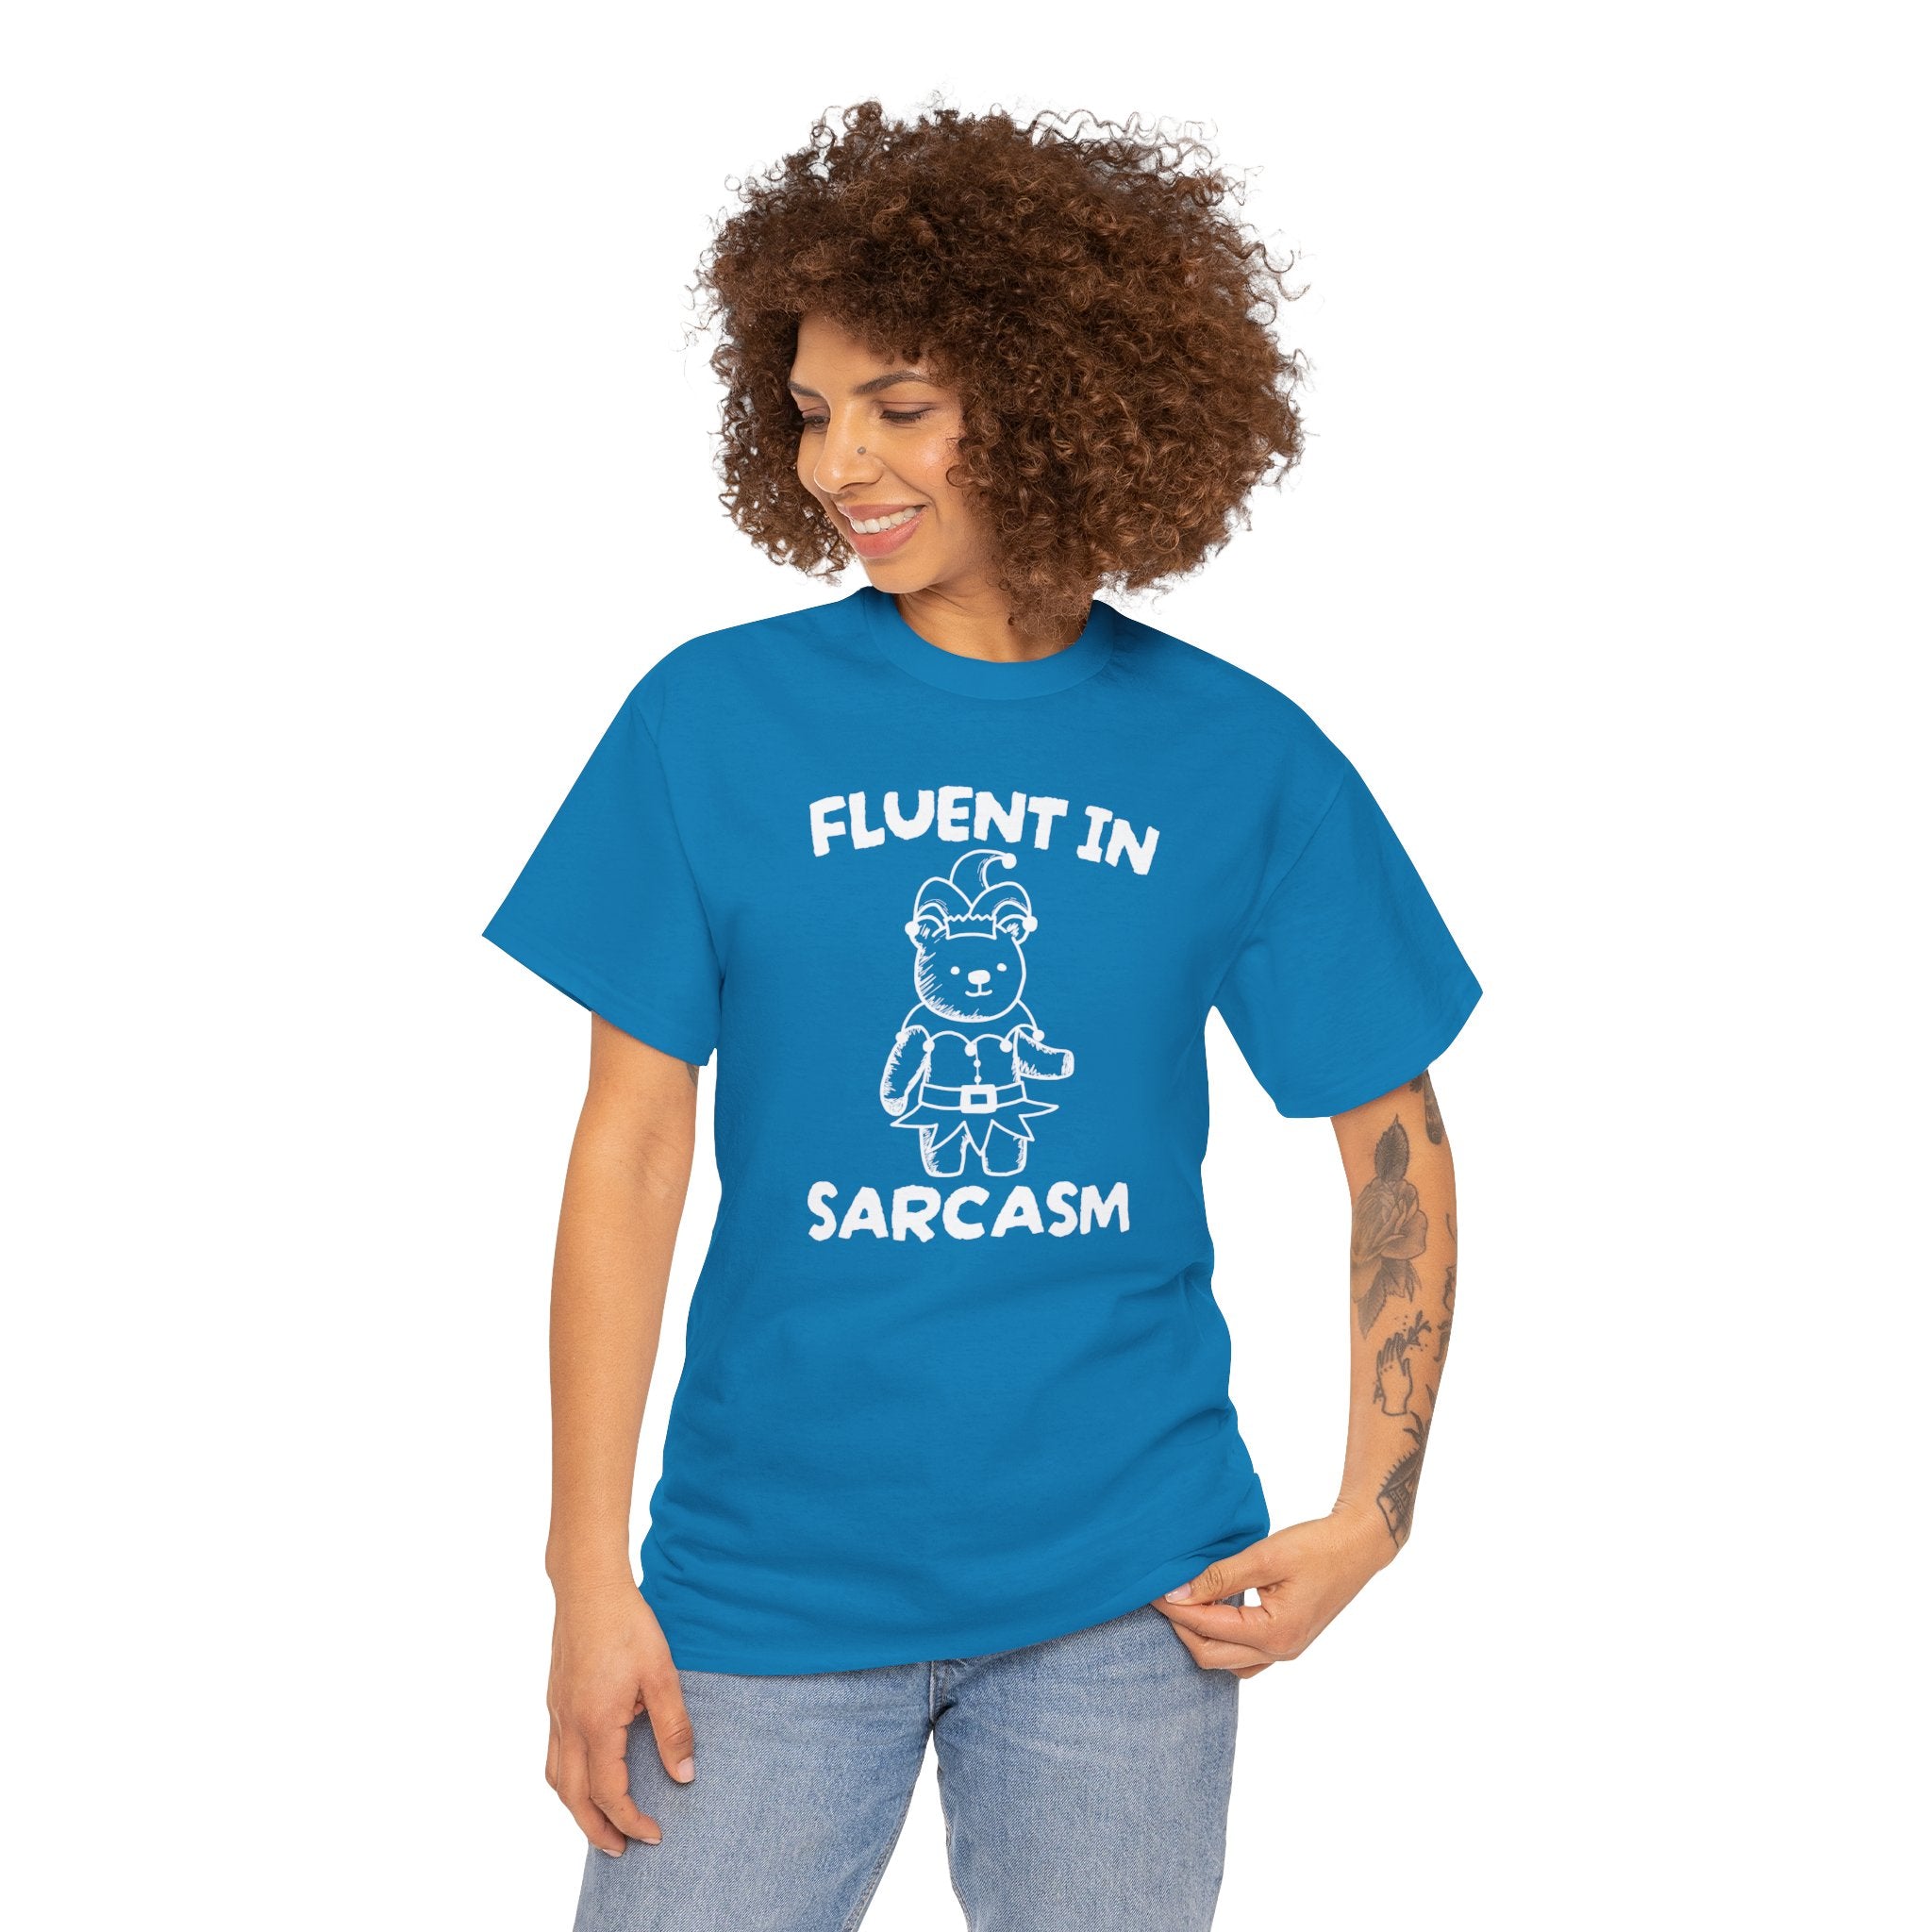 Fluent in Sarcasm Shirt